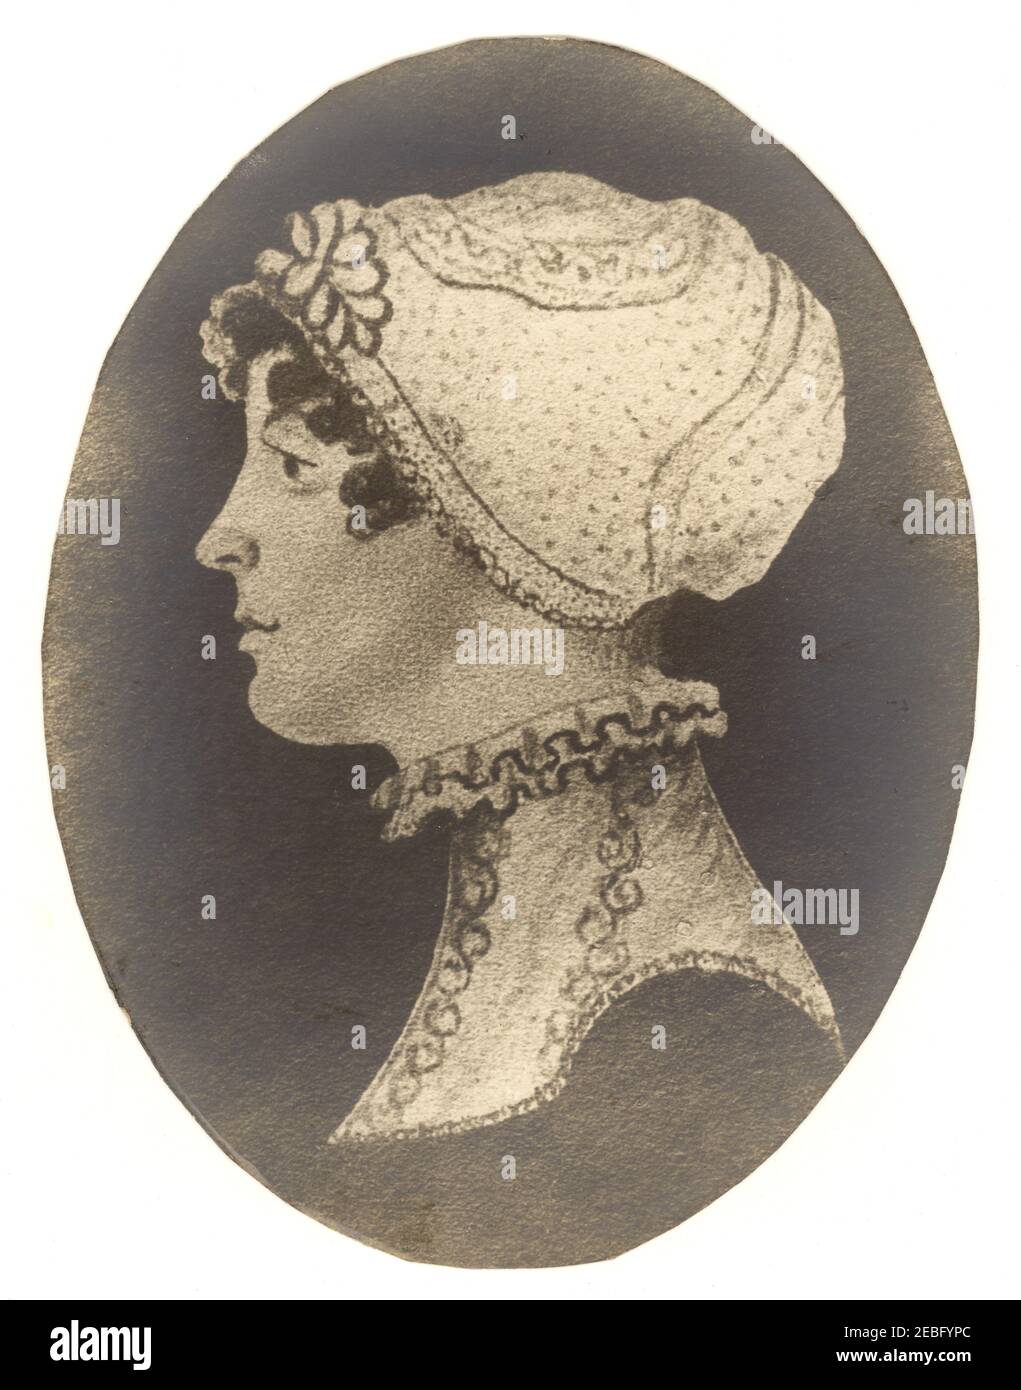 Disegno di donna dell'era di Regency che indossa un cappuccio o un cofano della mob che ha sposato le donne & gli sprinsters hanno indossato all'interno, scollo alto, Regno Unito circa 1810, 1815 Foto Stock